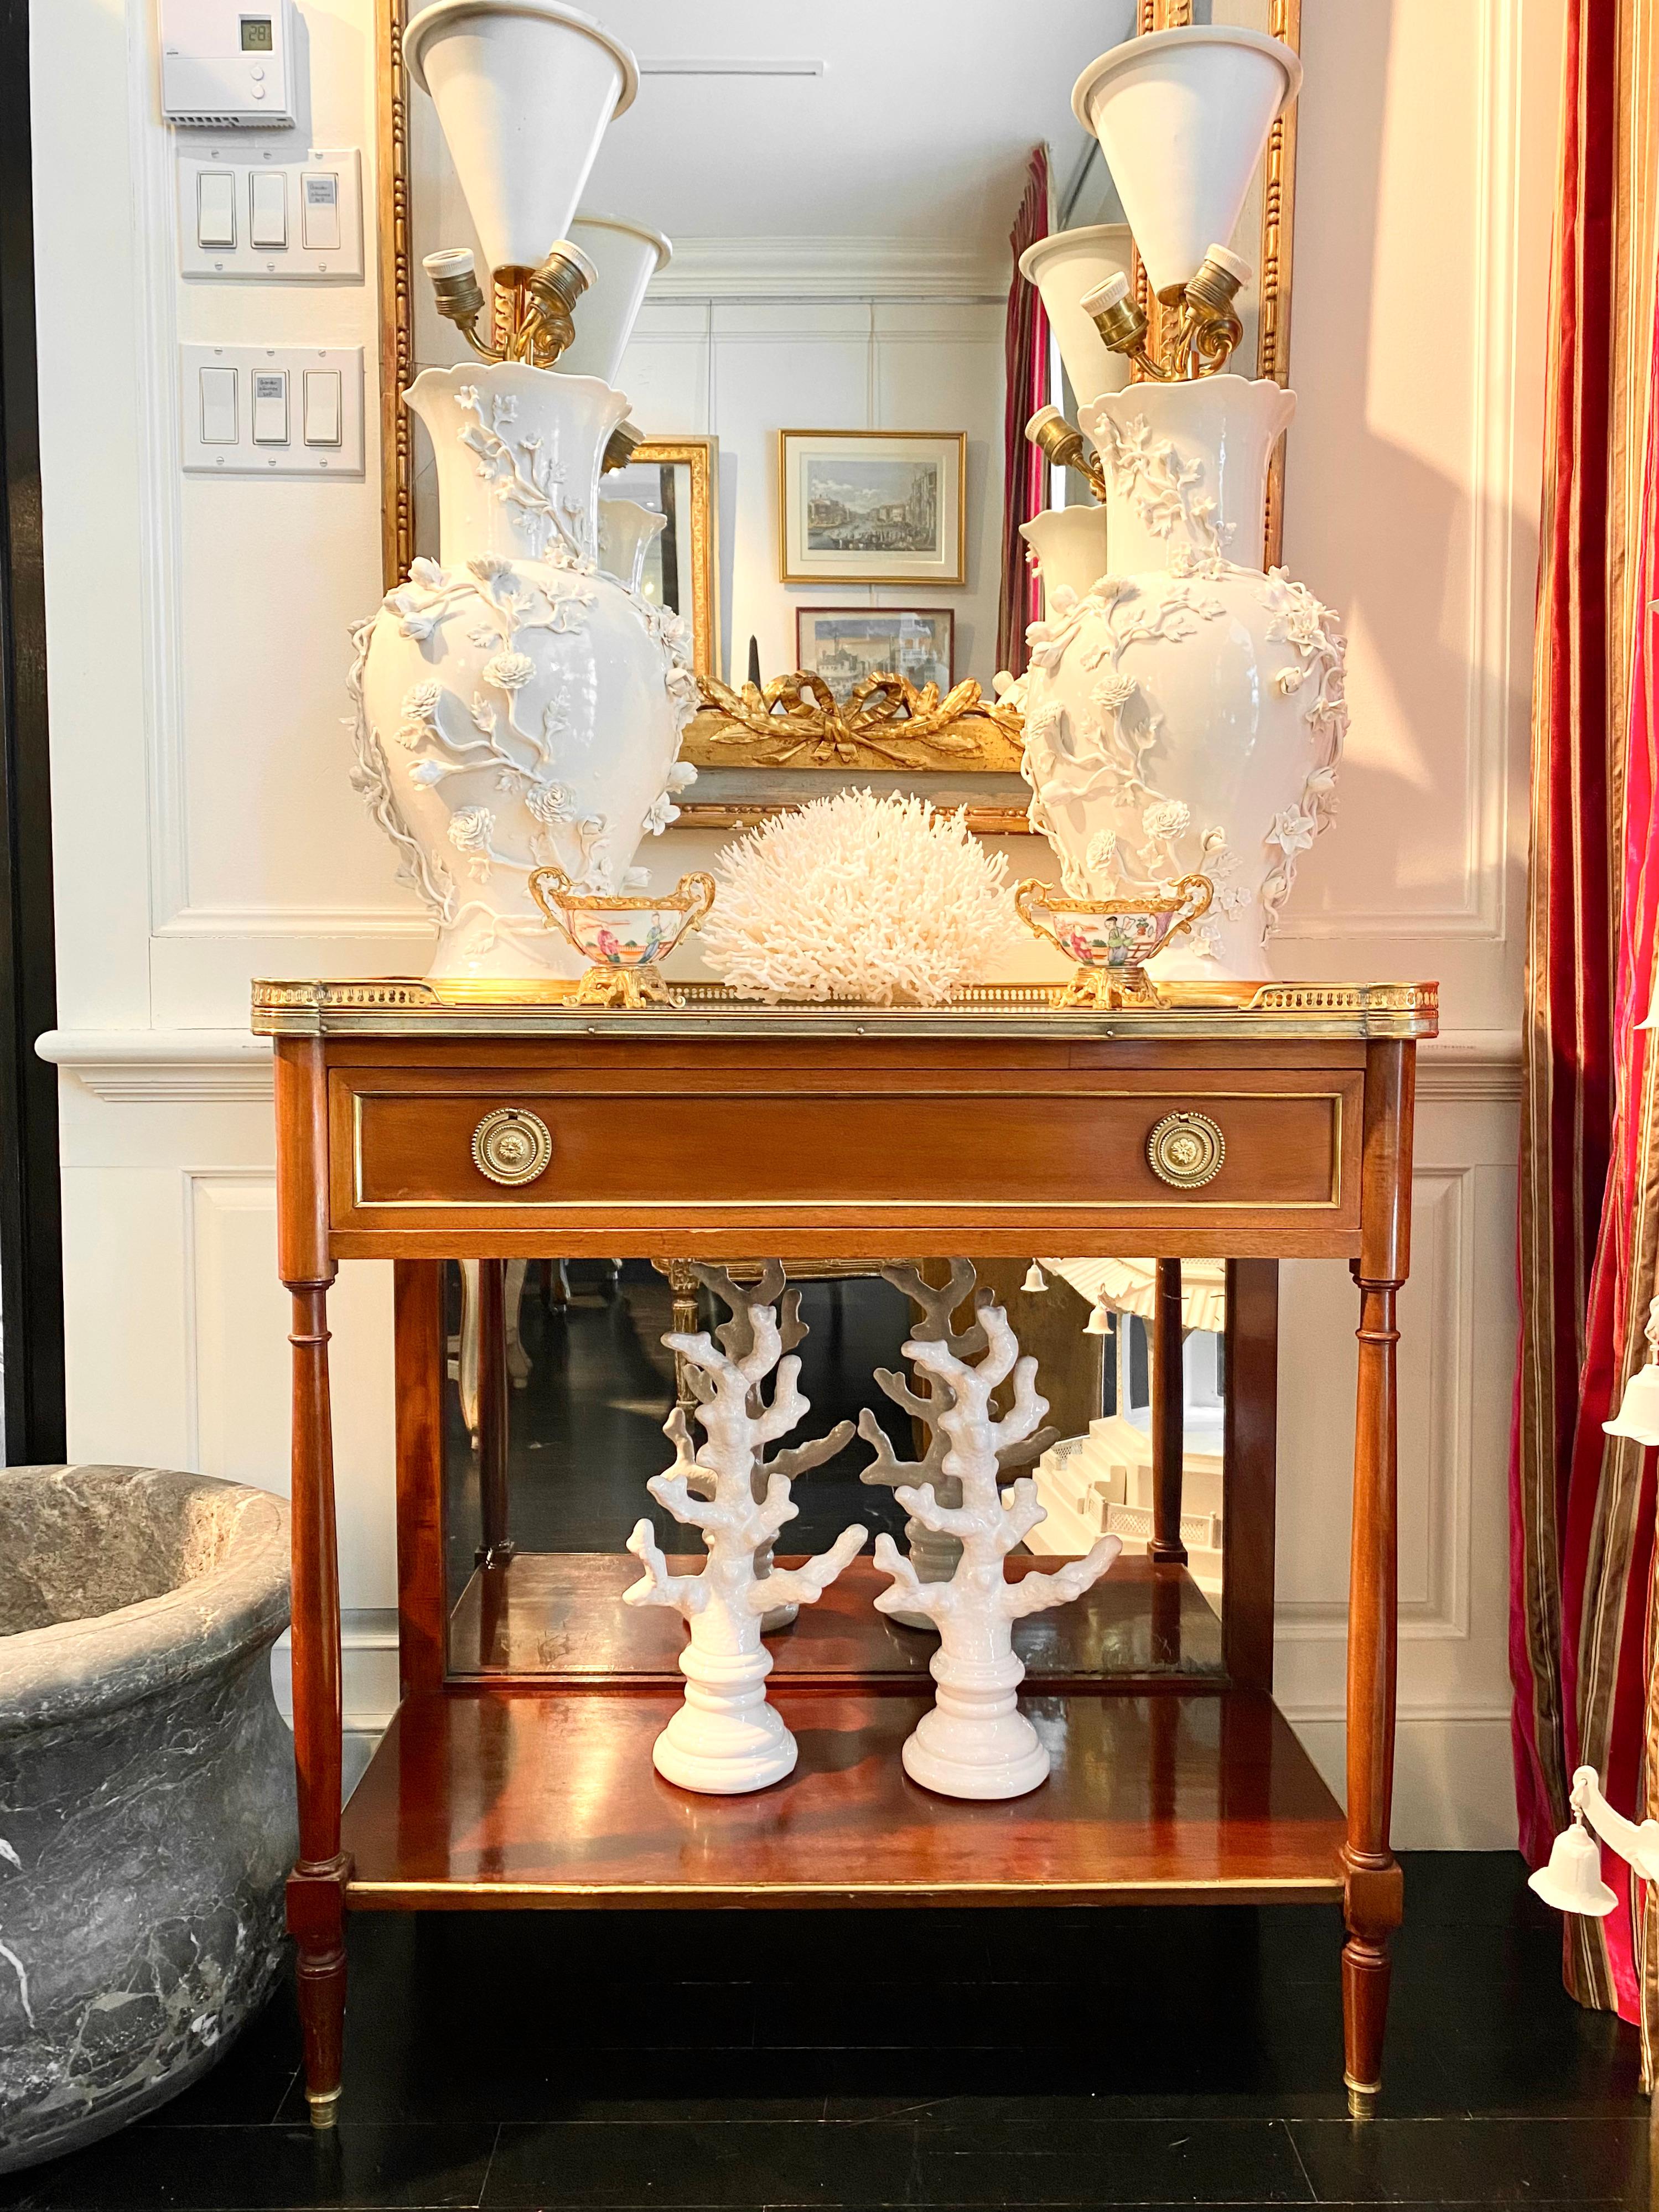 Louis XVI-Stil, Konsole mit Marmorplatte, Bronzegalerie, Spiegelrückwand
Lange, einzelne obere Schublade und untere Ablage auf vier Beinen mit Bronzekappen. Platte aus weißem Marmor mit runden Ecken, umgeben von einer durchbrochenen Bronzegalerie.